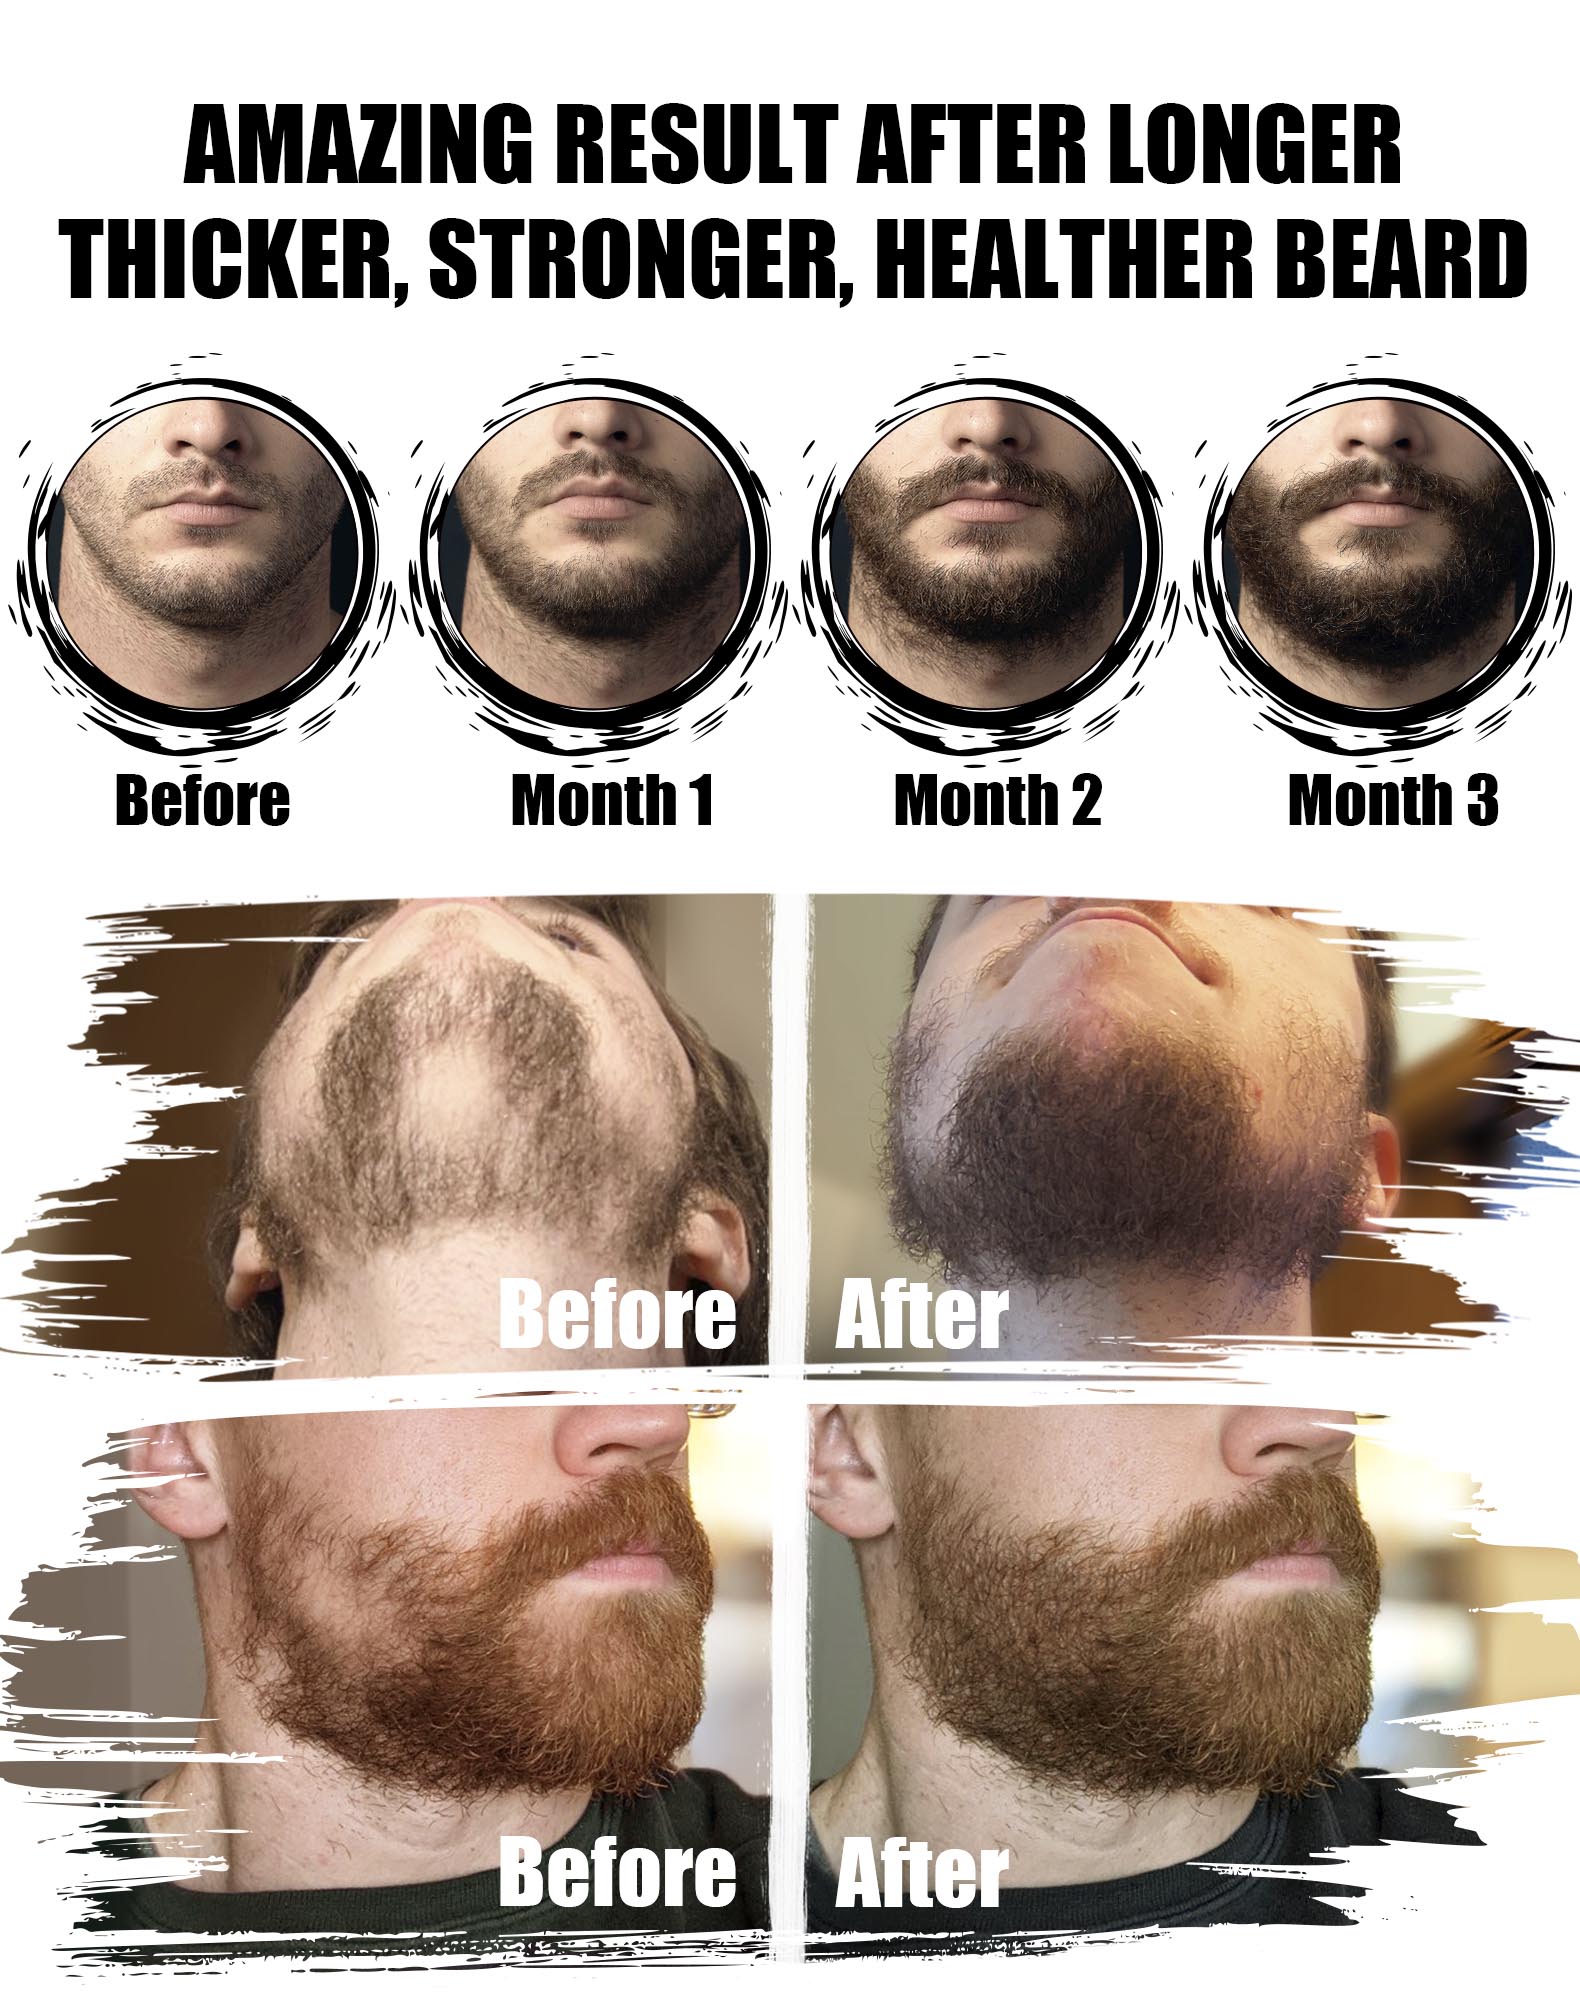 Ultimate Beard Care Conditioner Kit - Beard Grooming Kit for Men Softens